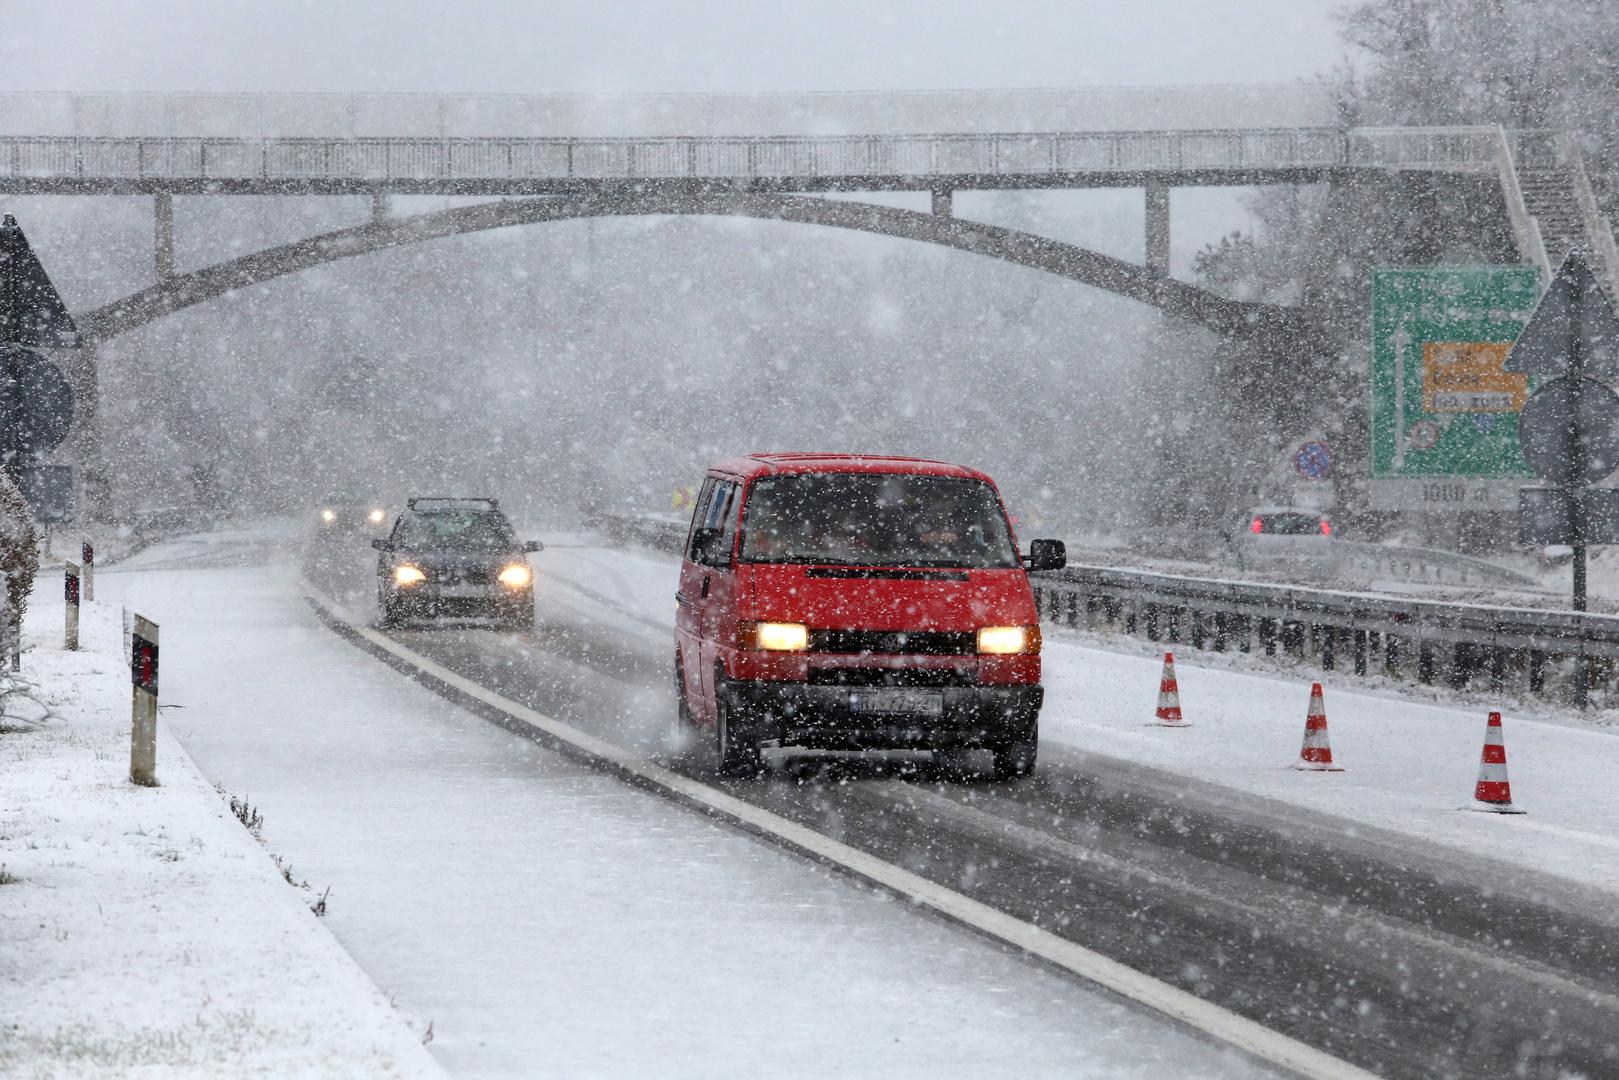 Vožnja po snijegu i ledu posebno je izazovna za vozače. Donosimo 8 osnovnih pravila za vožnju u takvim uvjetima prema HAK-u